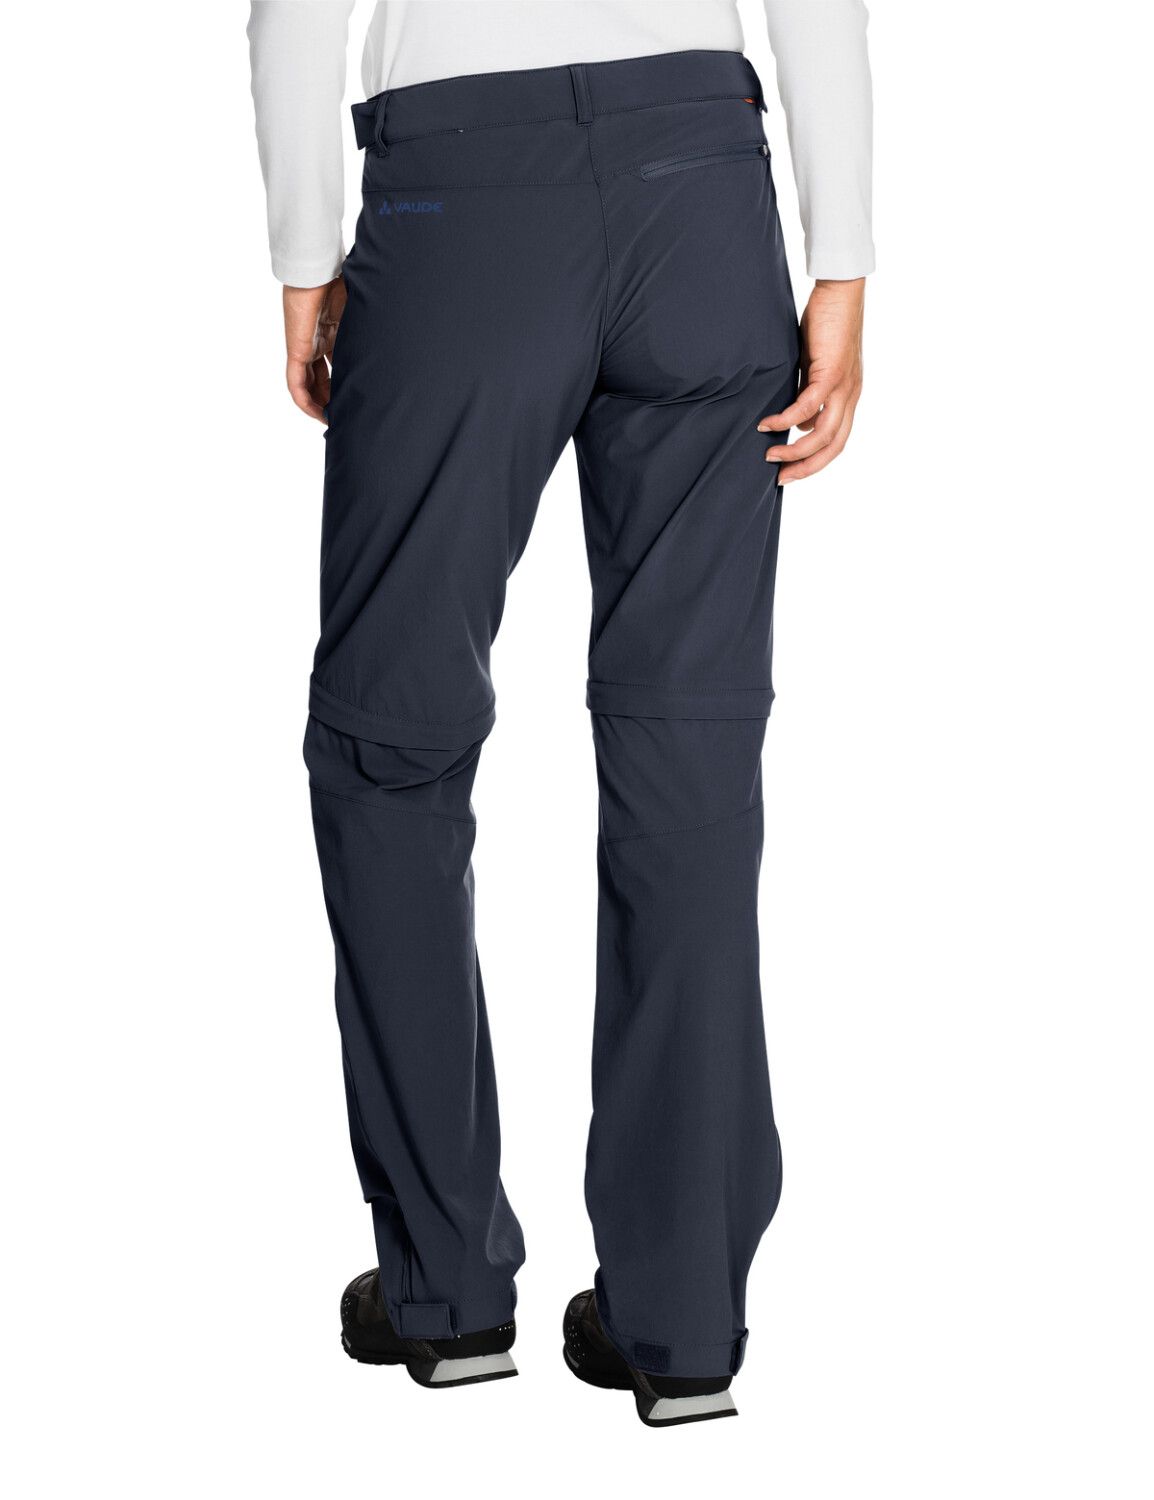 VAUDE Women's Farley Stretch ZO T-Zip Pants (Bild 57)